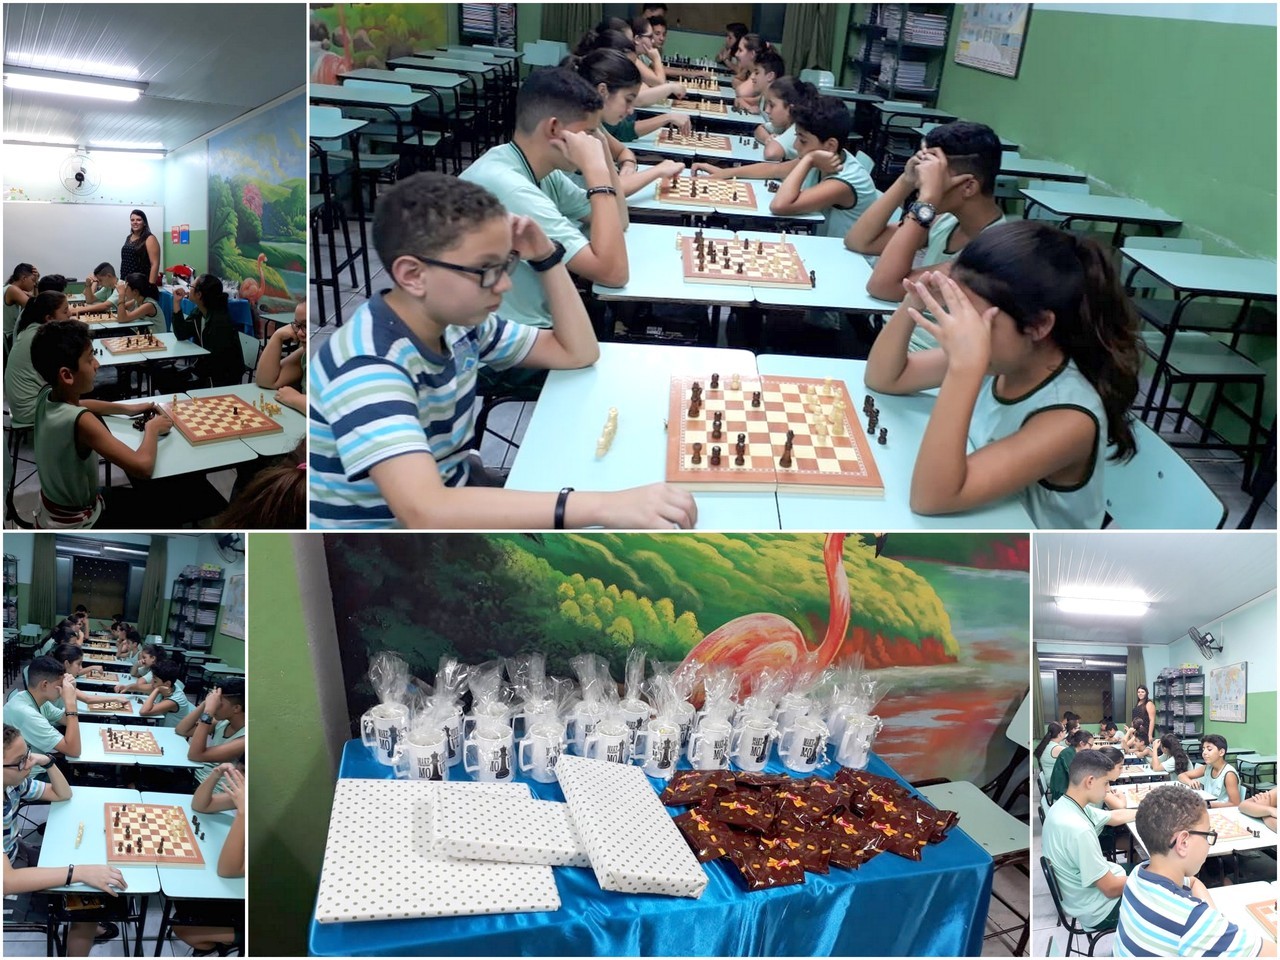 Instituto de xadrez